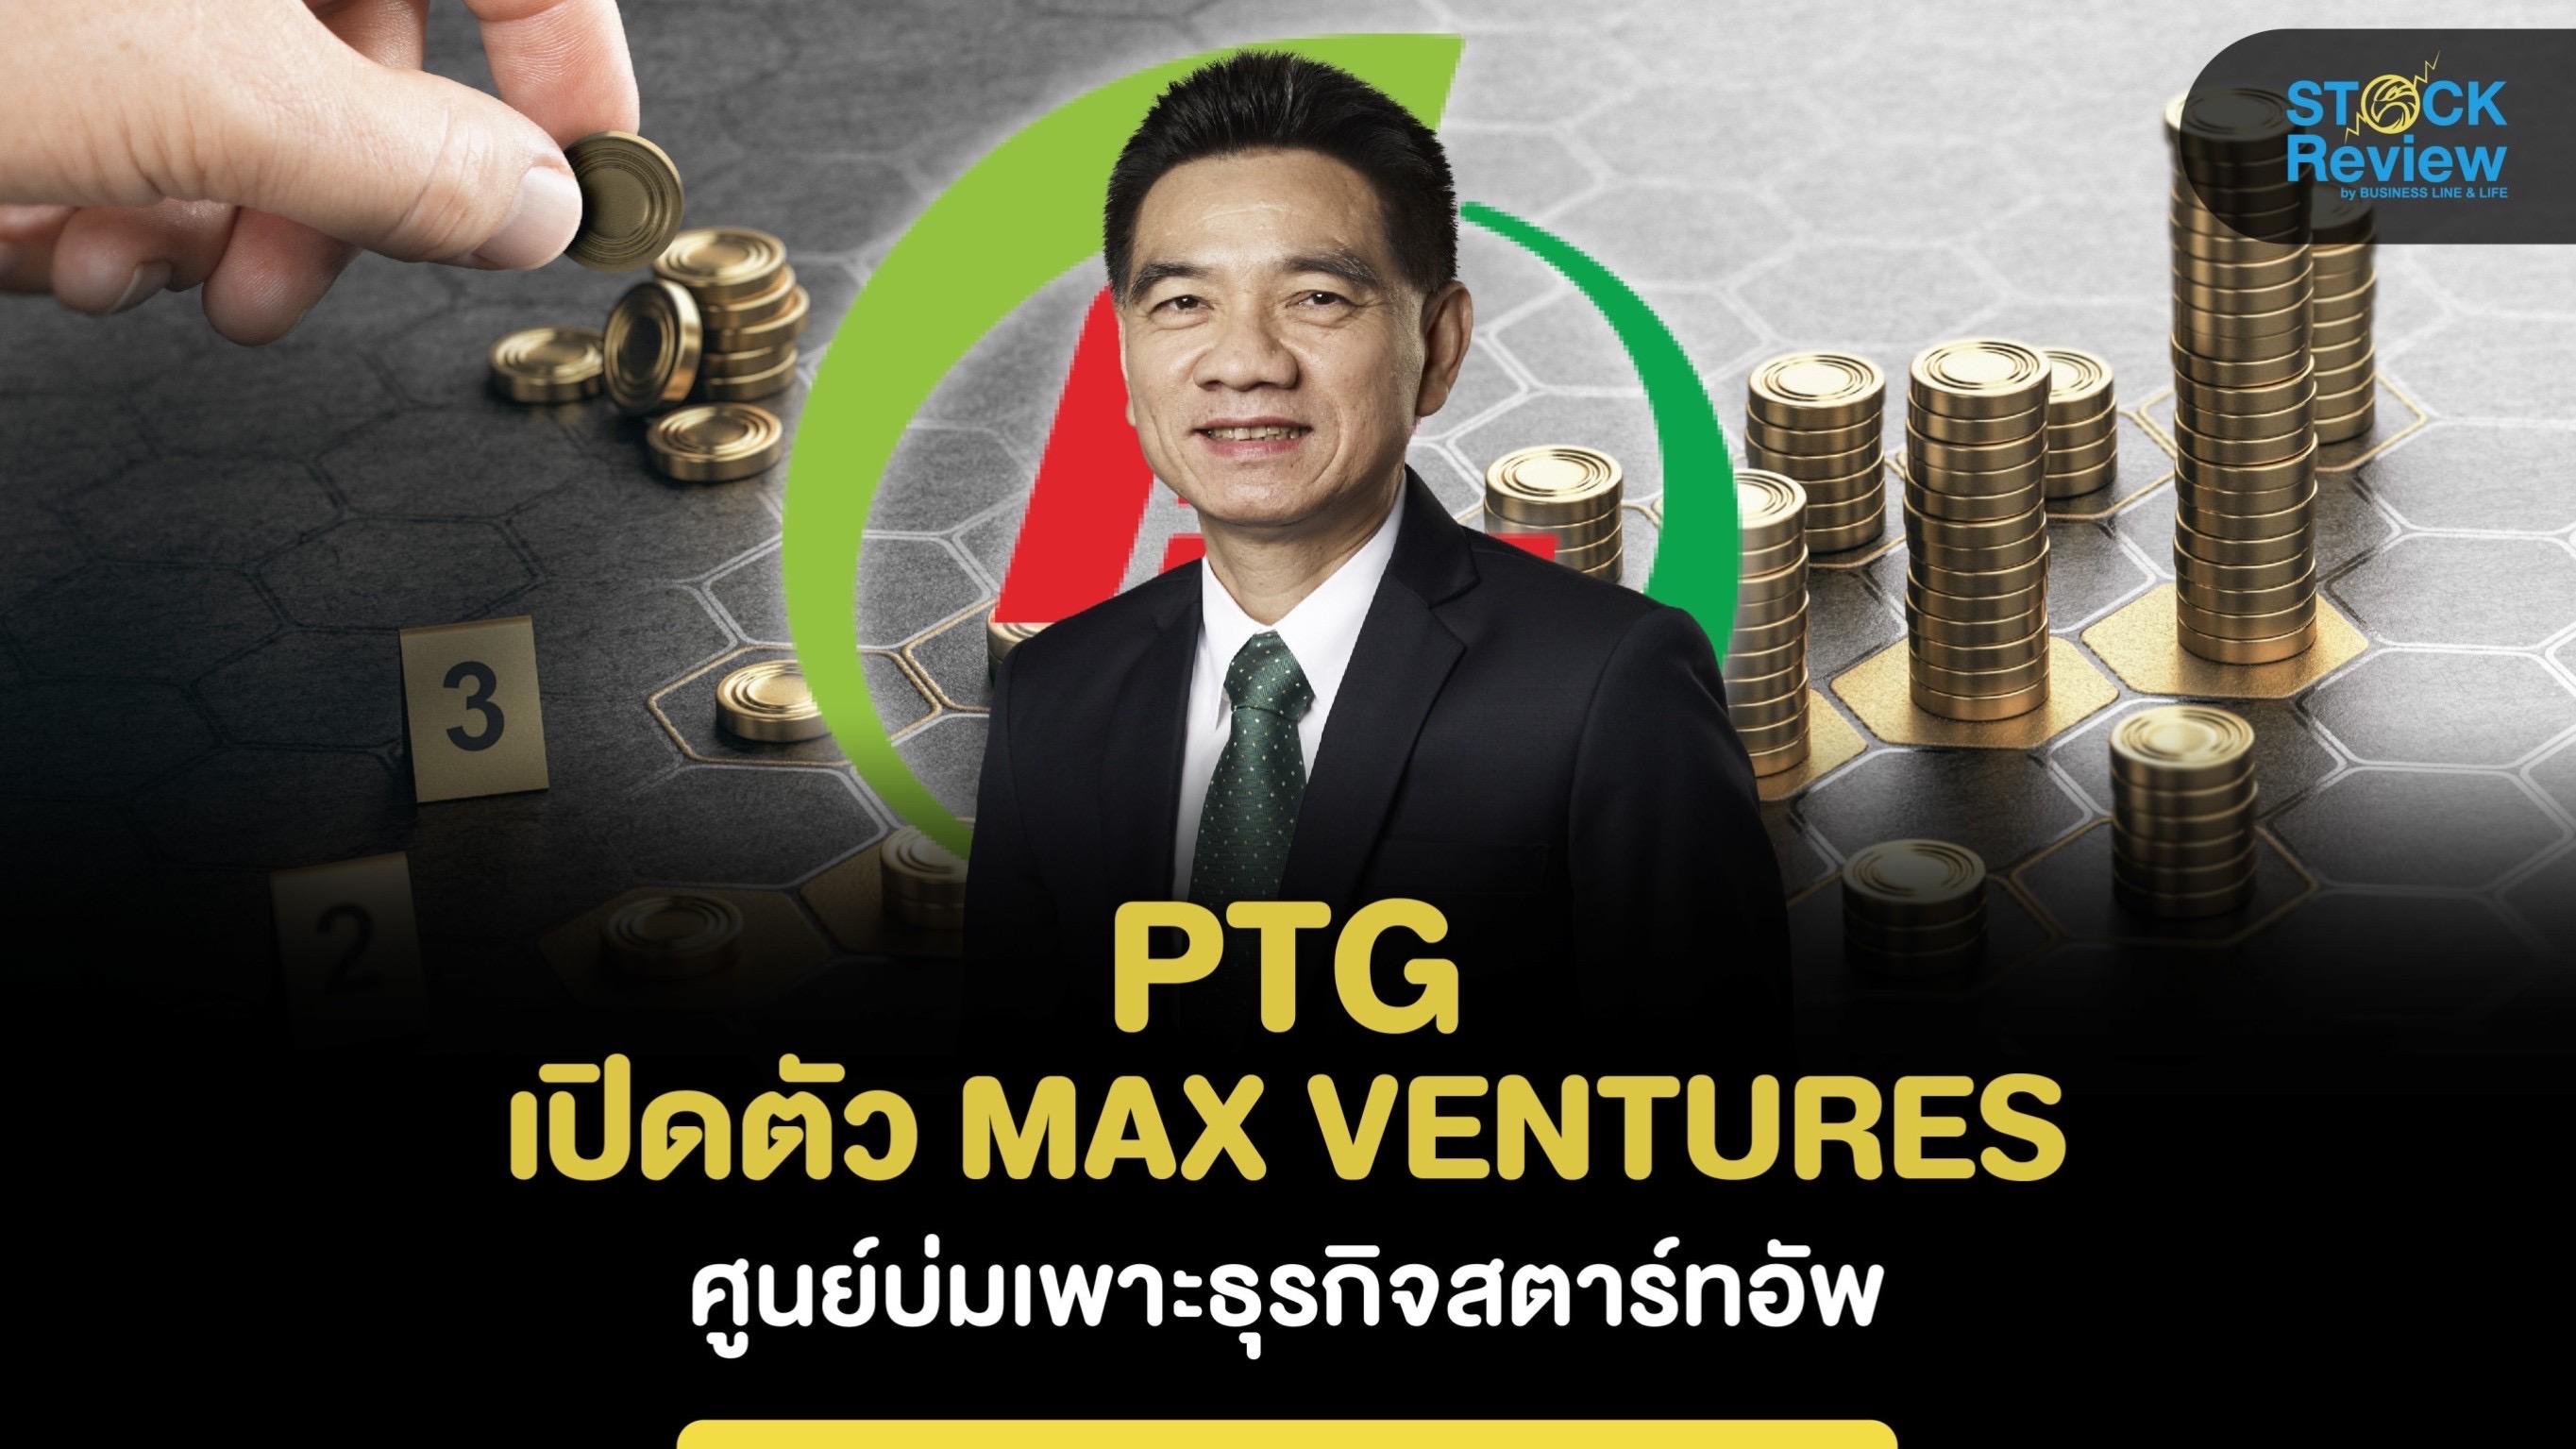 PTG เปิดตัว “MAX VENTURES”ศูนย์บ่มเพาะธุรกิจสตาร์ทอัพ หวังปั้นธุรกิจคู่ค้าสู่แกนการสำคัญ